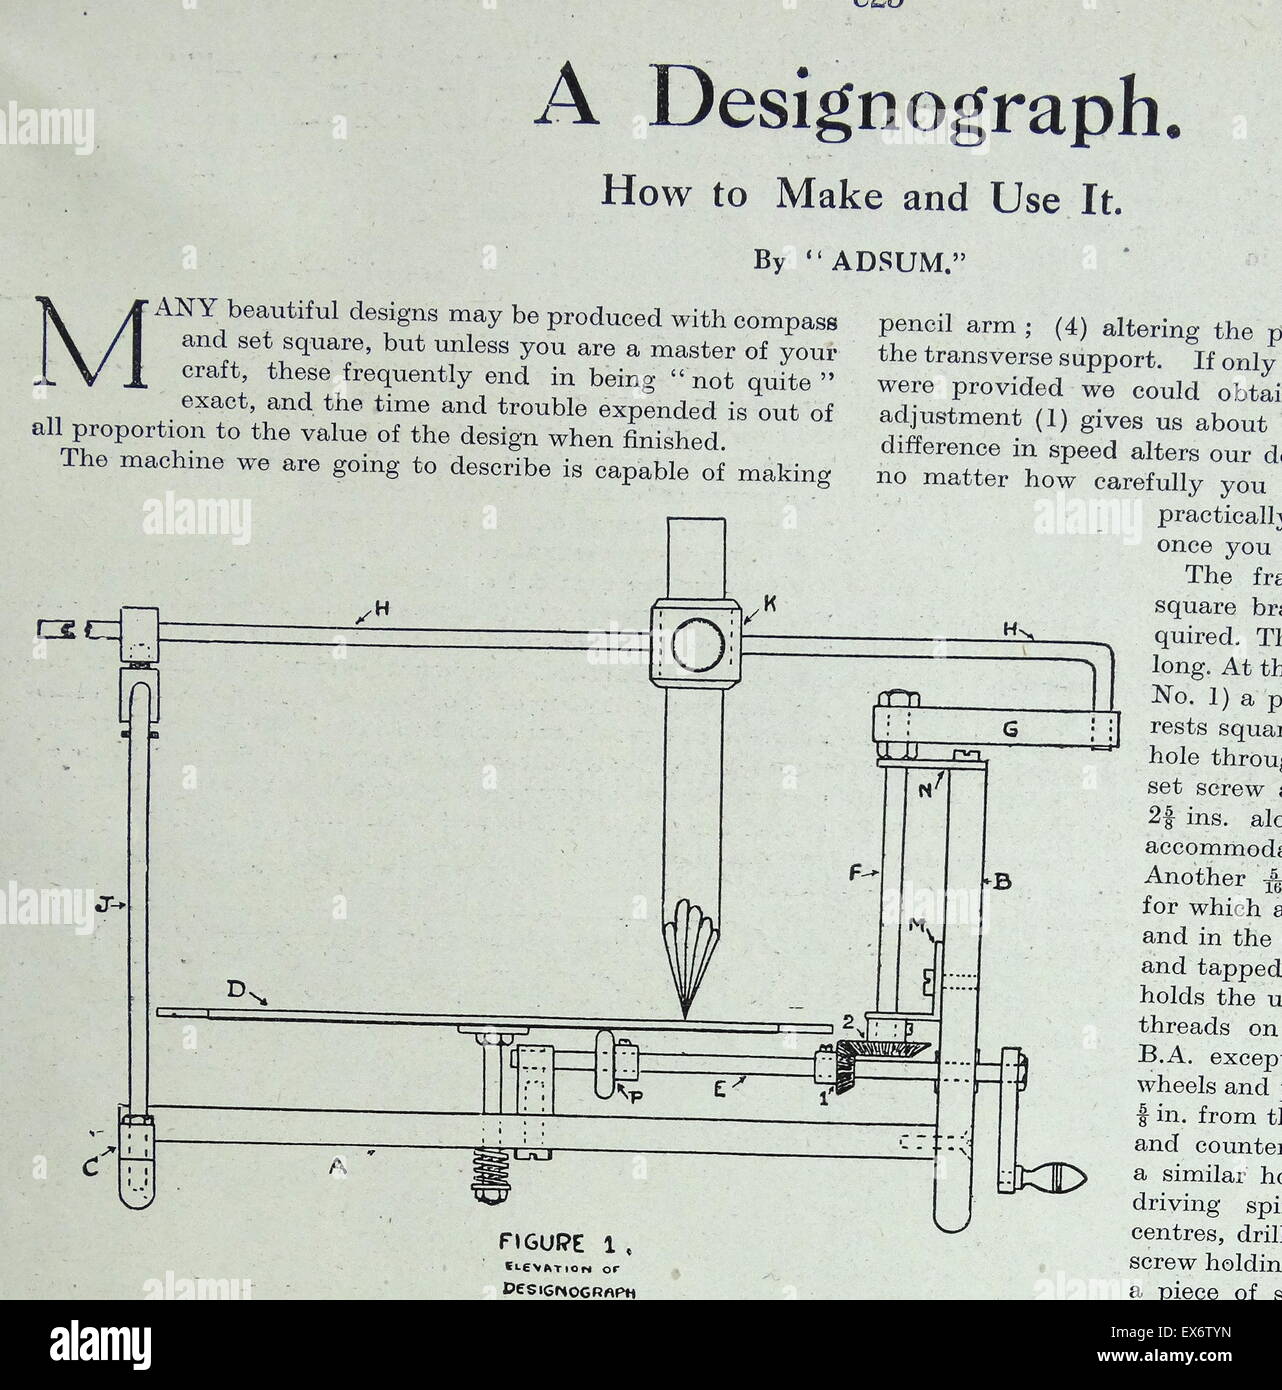 Piano schematico per la realizzazione di un disegno Designograph macchina 1938 Foto Stock